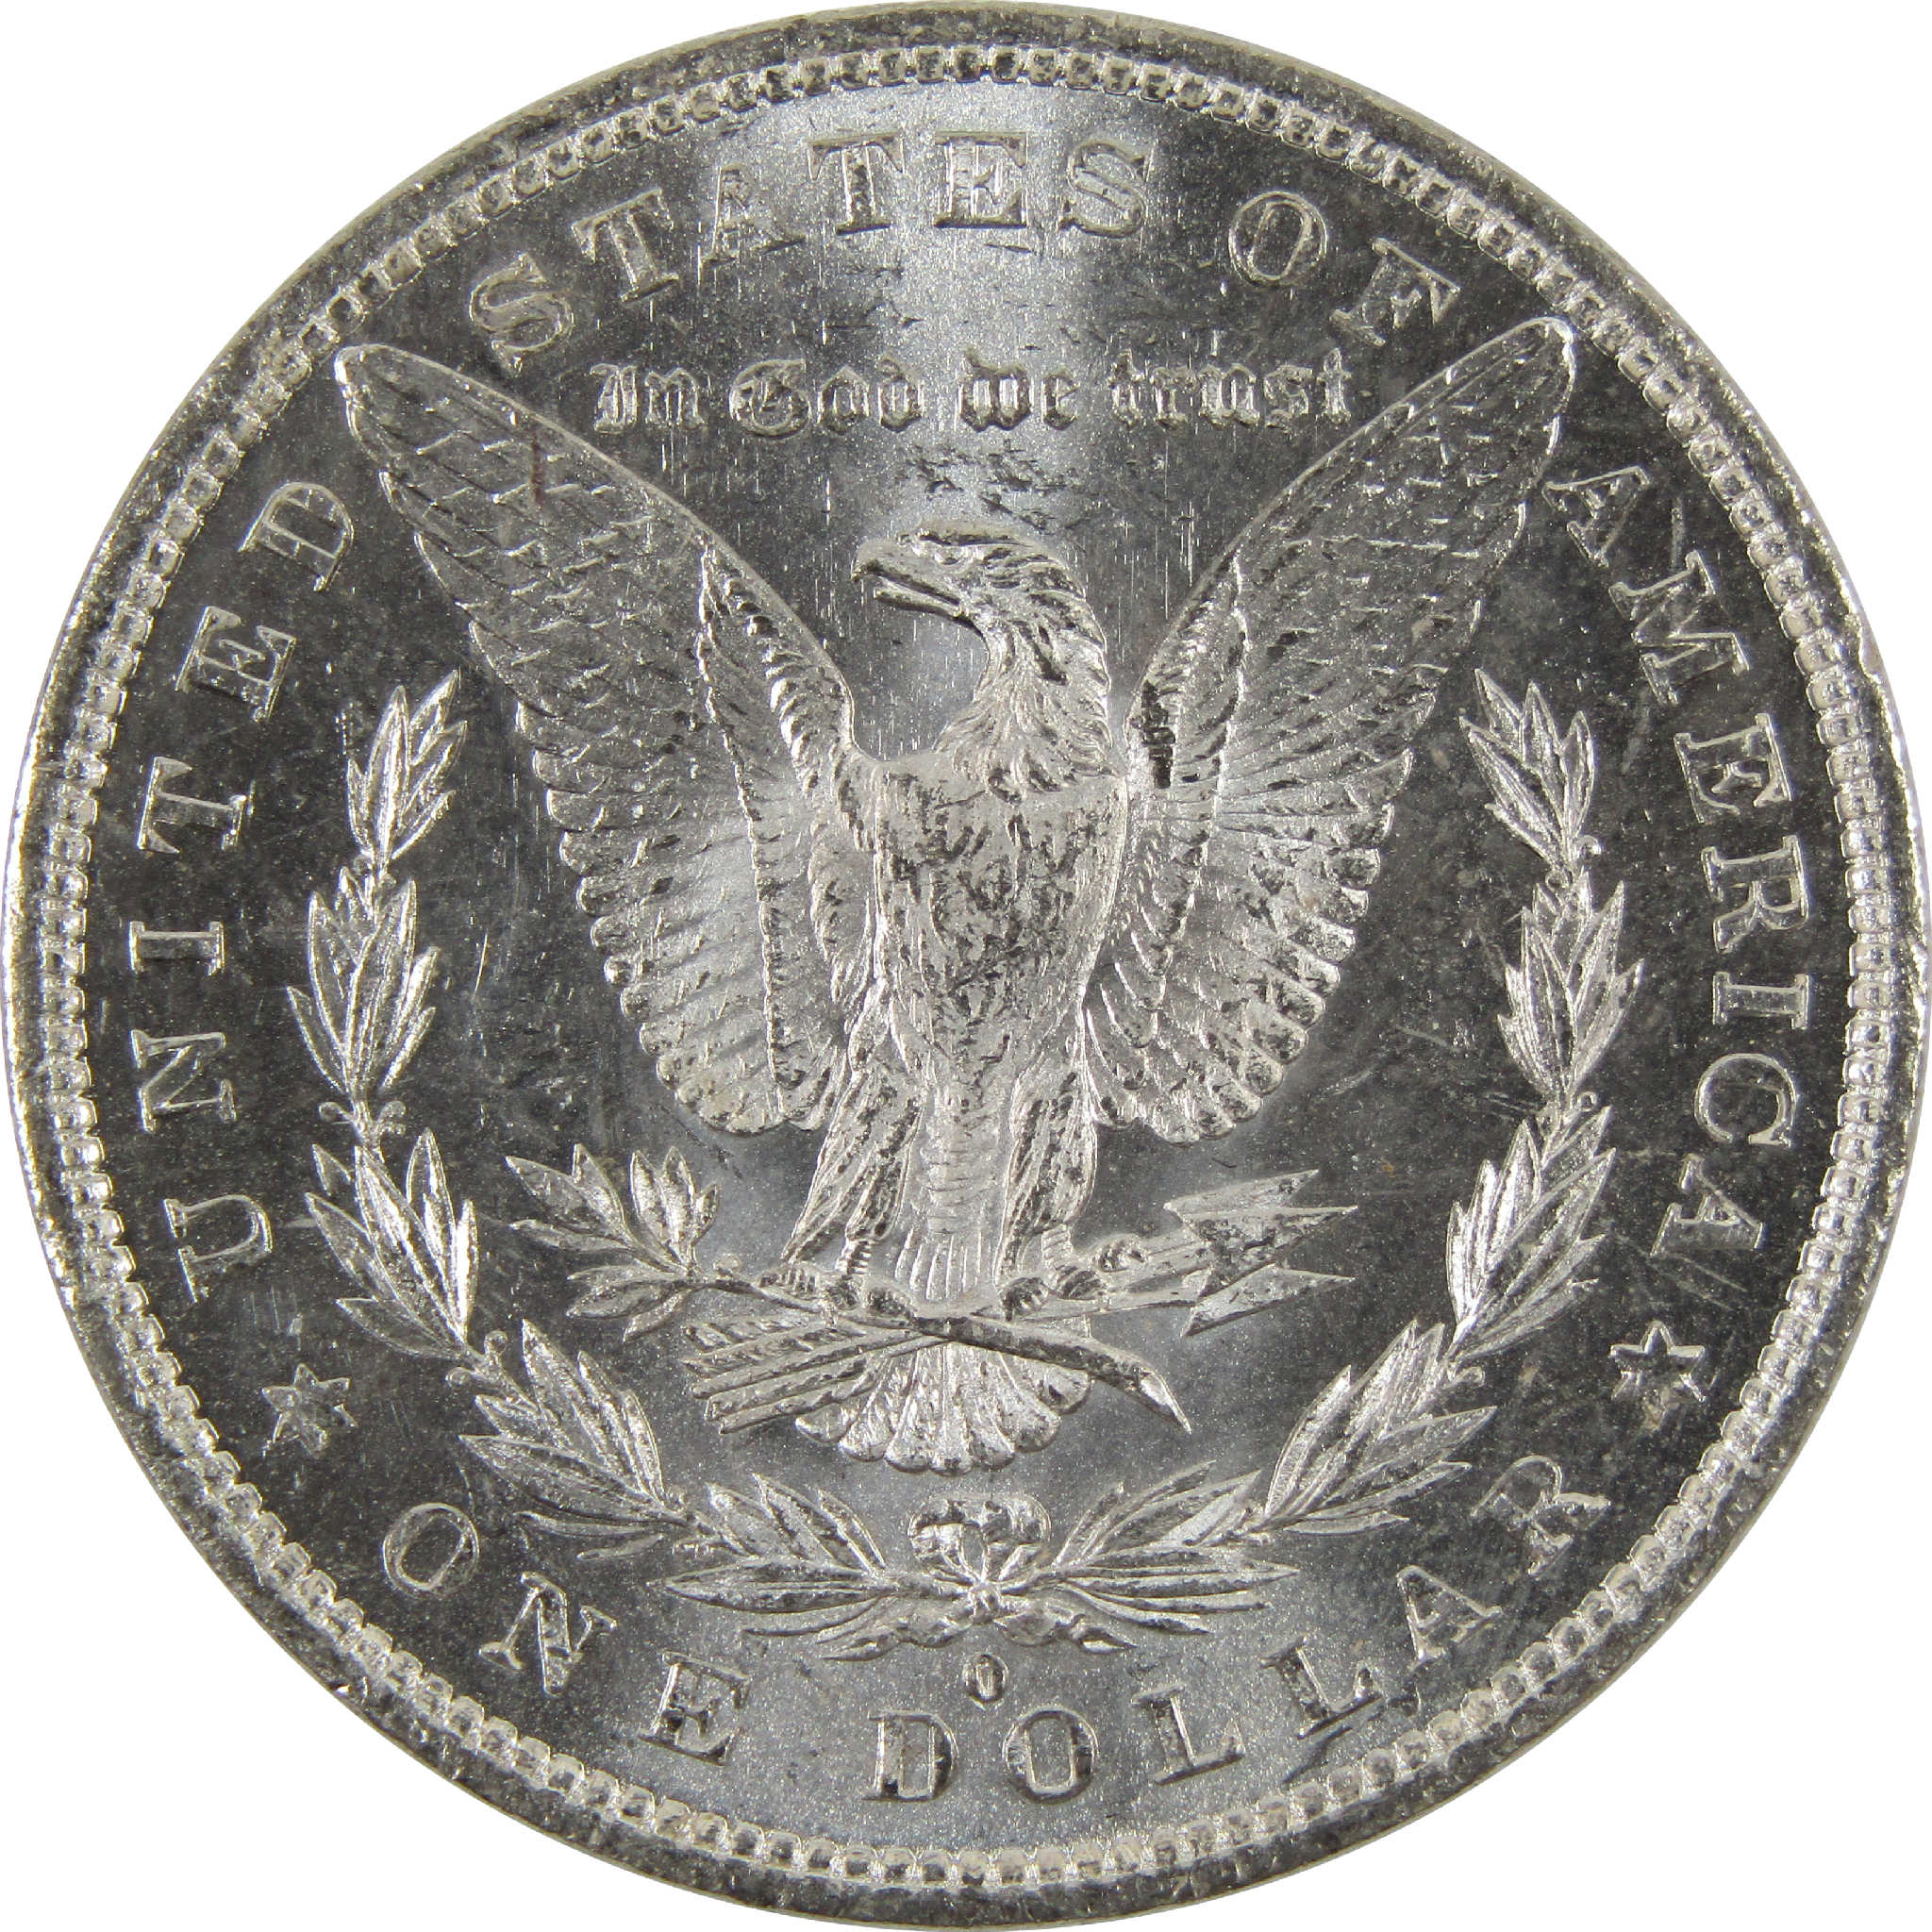 1882 O Morgan Dollar BU Uncirculated 90% Silver $1 Coin SKU:I8920 - Morgan coin - Morgan silver dollar - Morgan silver dollar for sale - Profile Coins &amp; Collectibles